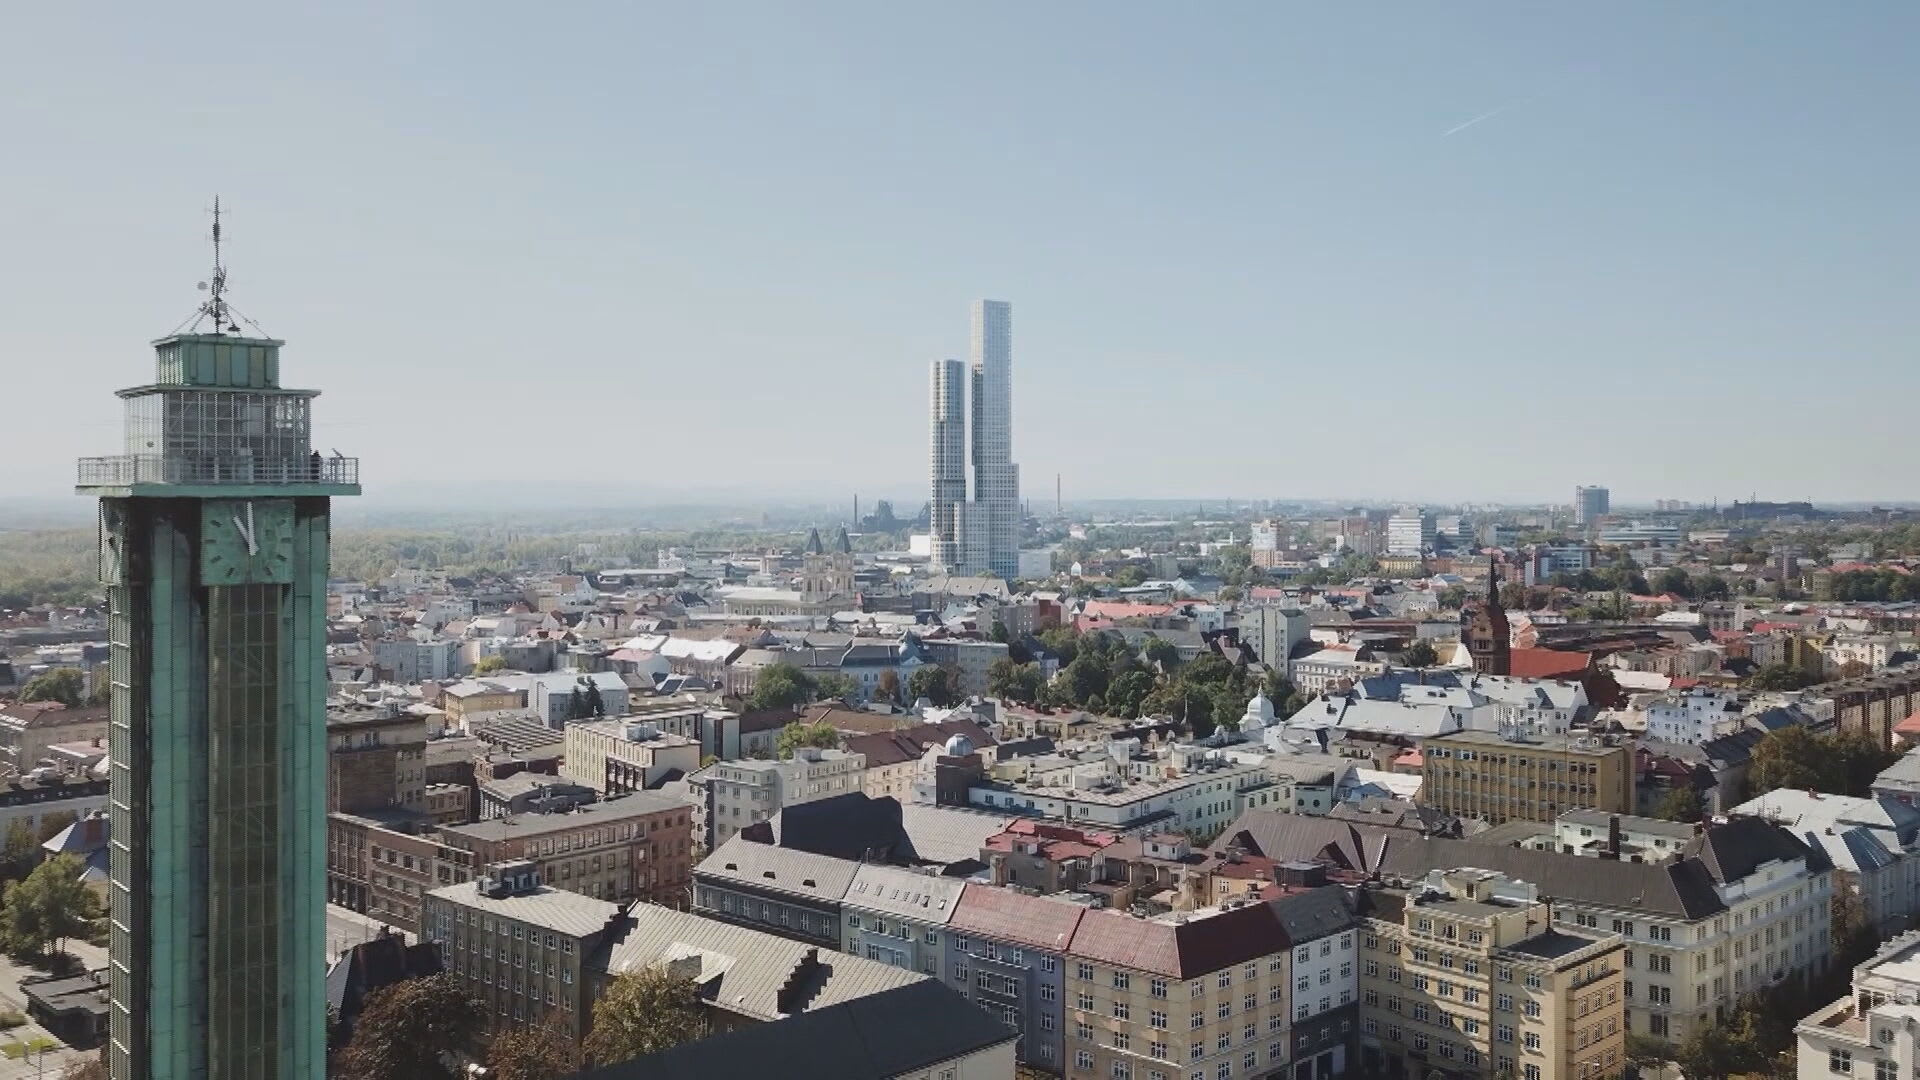 Plánovaná nejvyšší budova v České republice se potýká s komplikacemi. Jak bude nakonec mrakodrap vypadat?